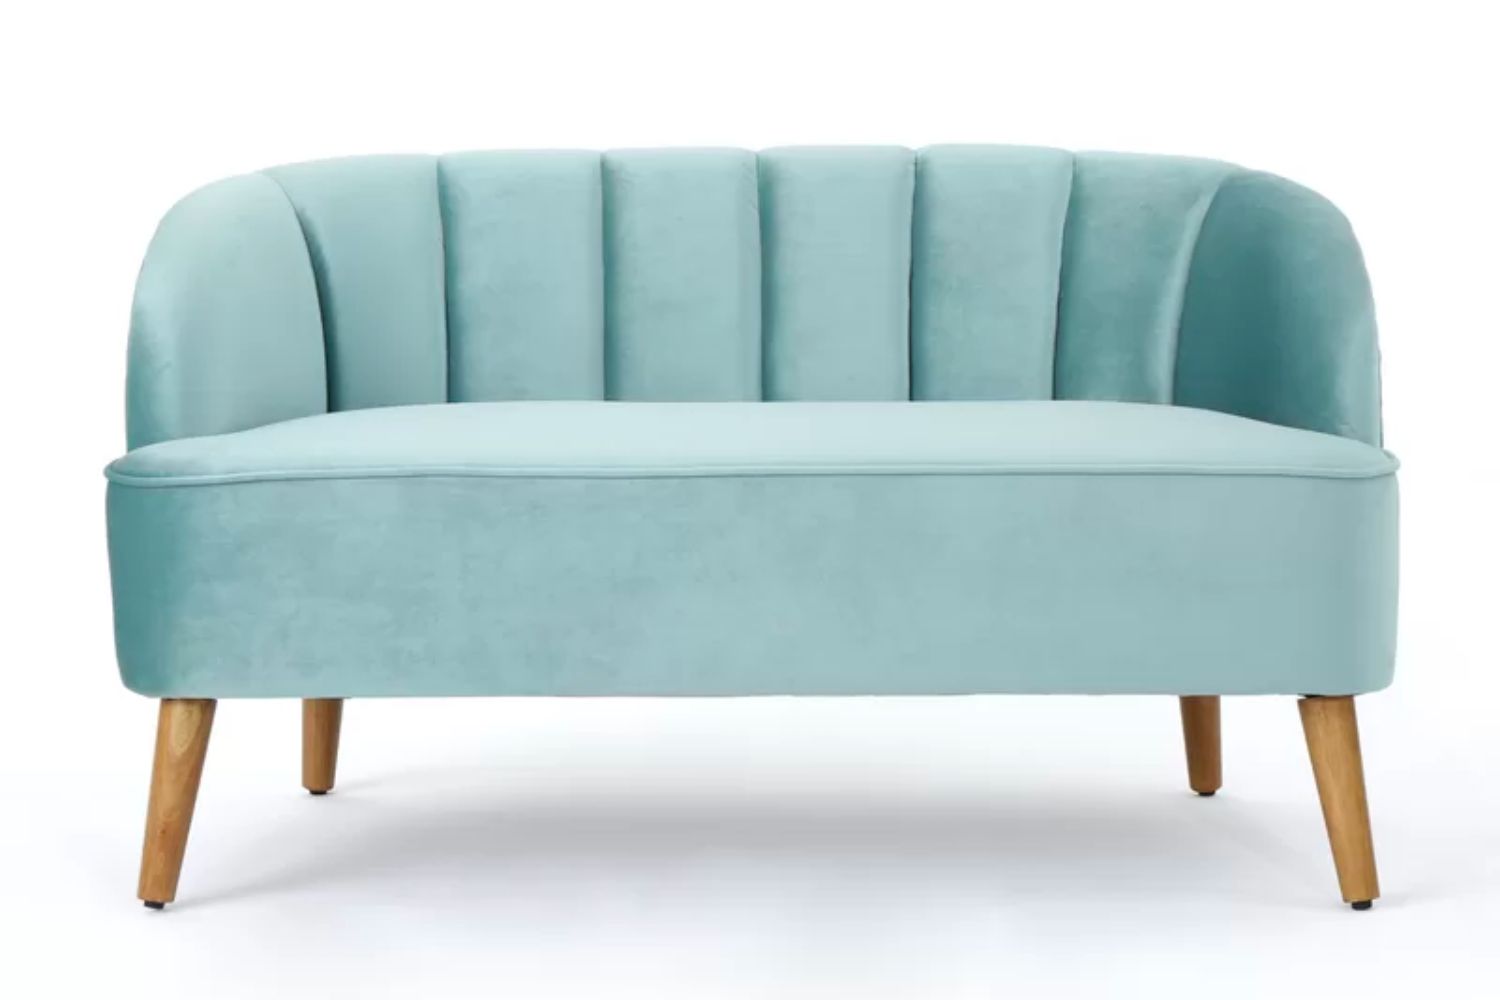 The Best Sofa Brands Option: Corrigan Studio